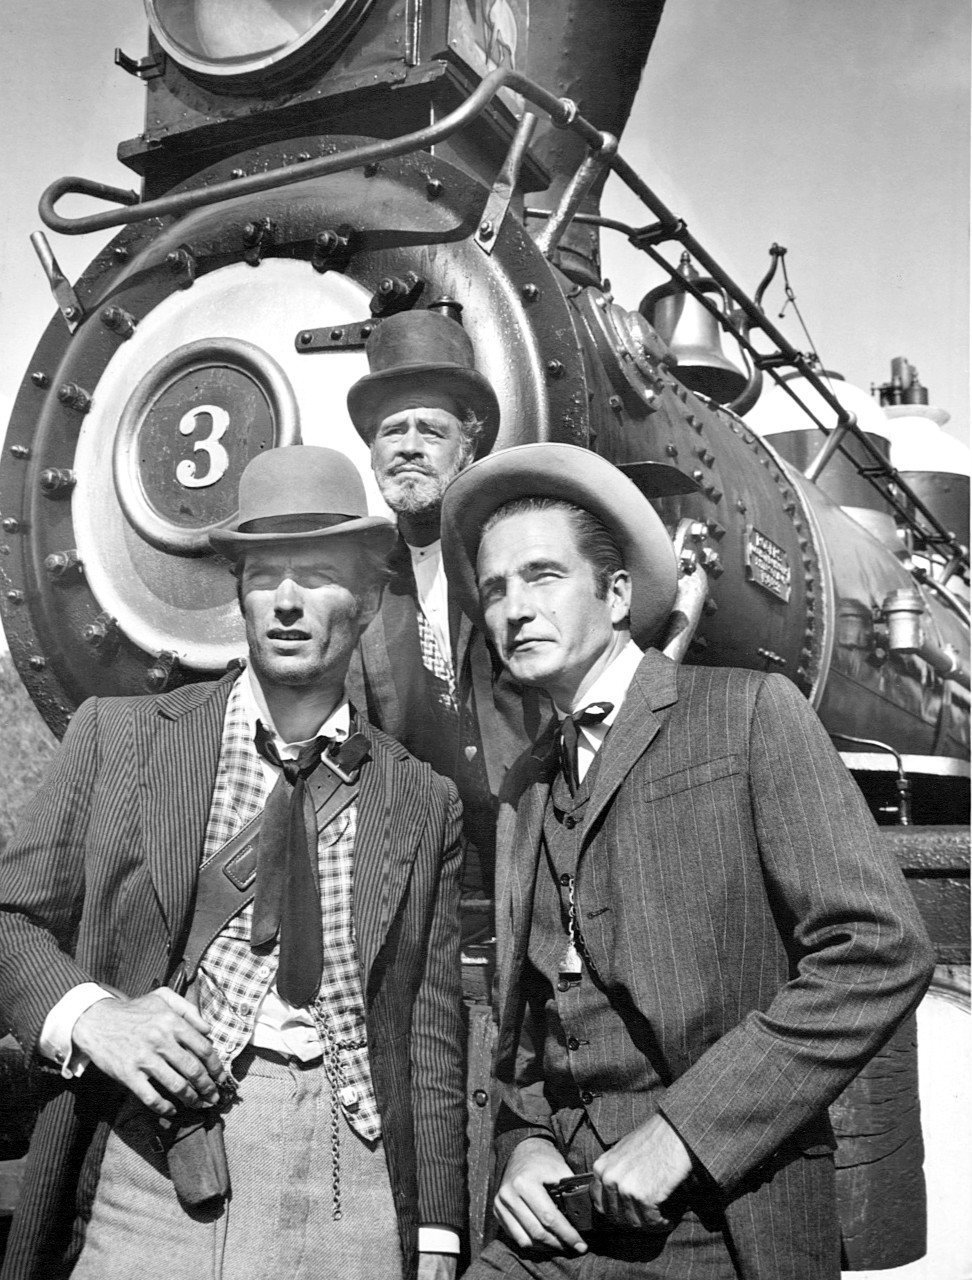  Foto de Clint Eastwood, Paul Brinegar y Eric Fleming en el programa de televisión "Rawhide", alrededor de 1950. | Foto: Wikimedia Commons